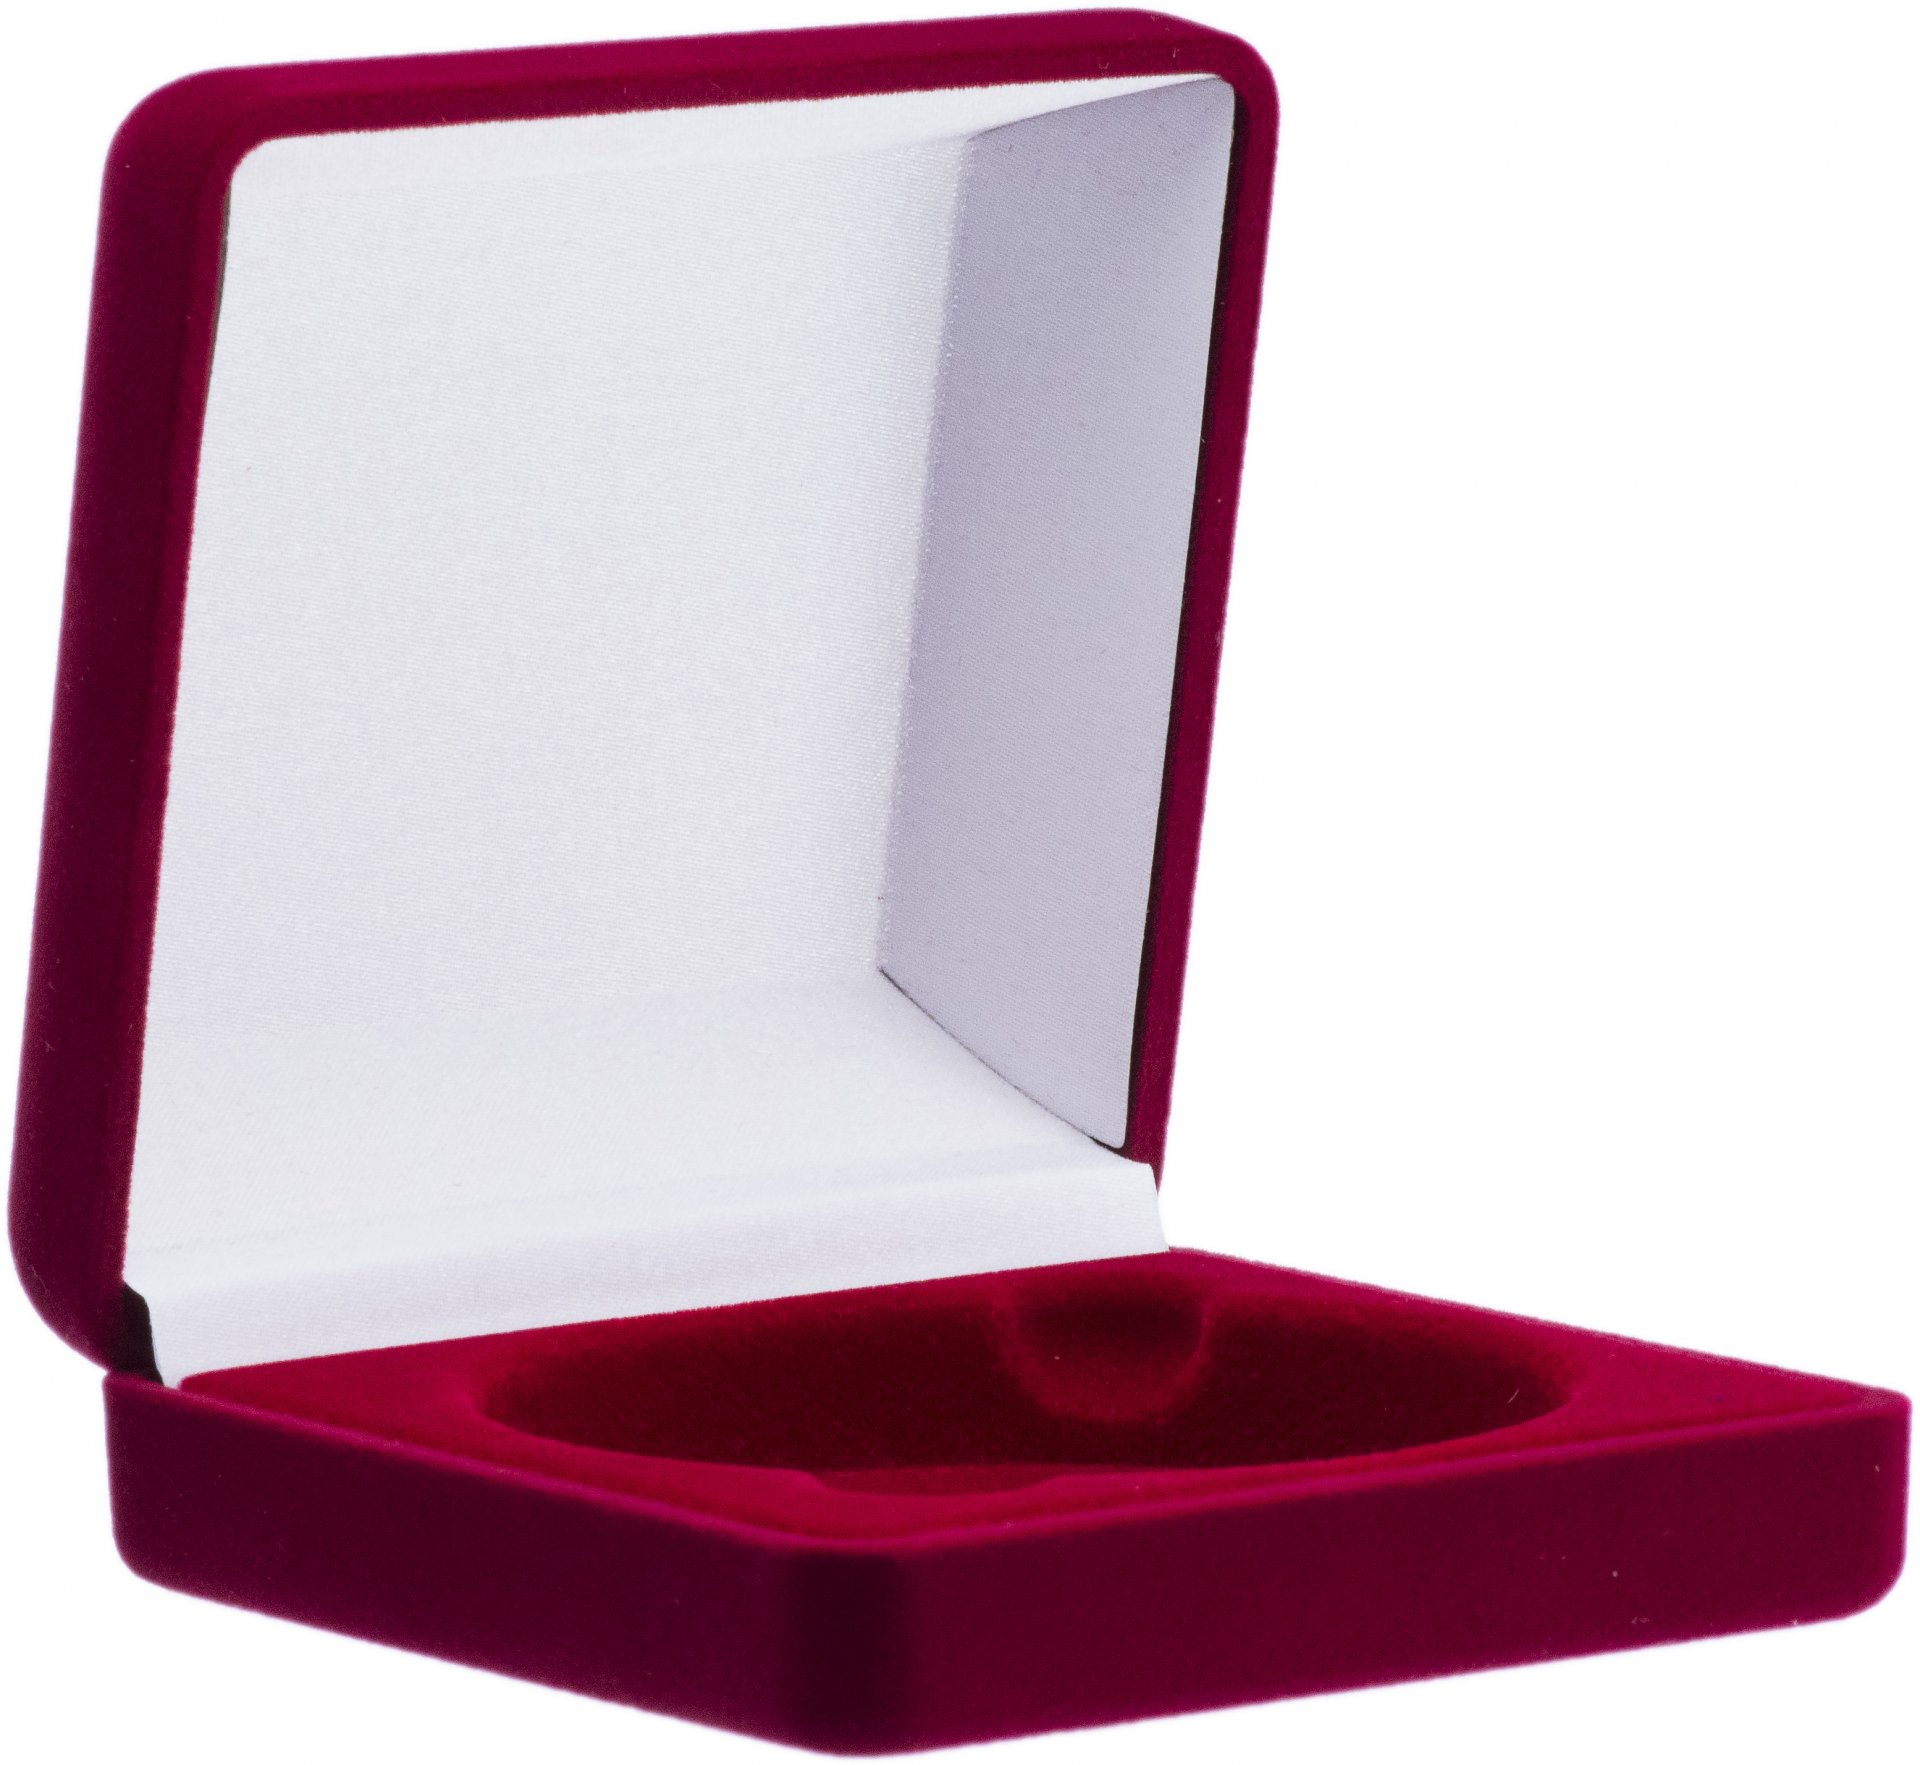 Подарочная коробка для капсулы 75 мм бархатная красная стоимостью 650 руб.